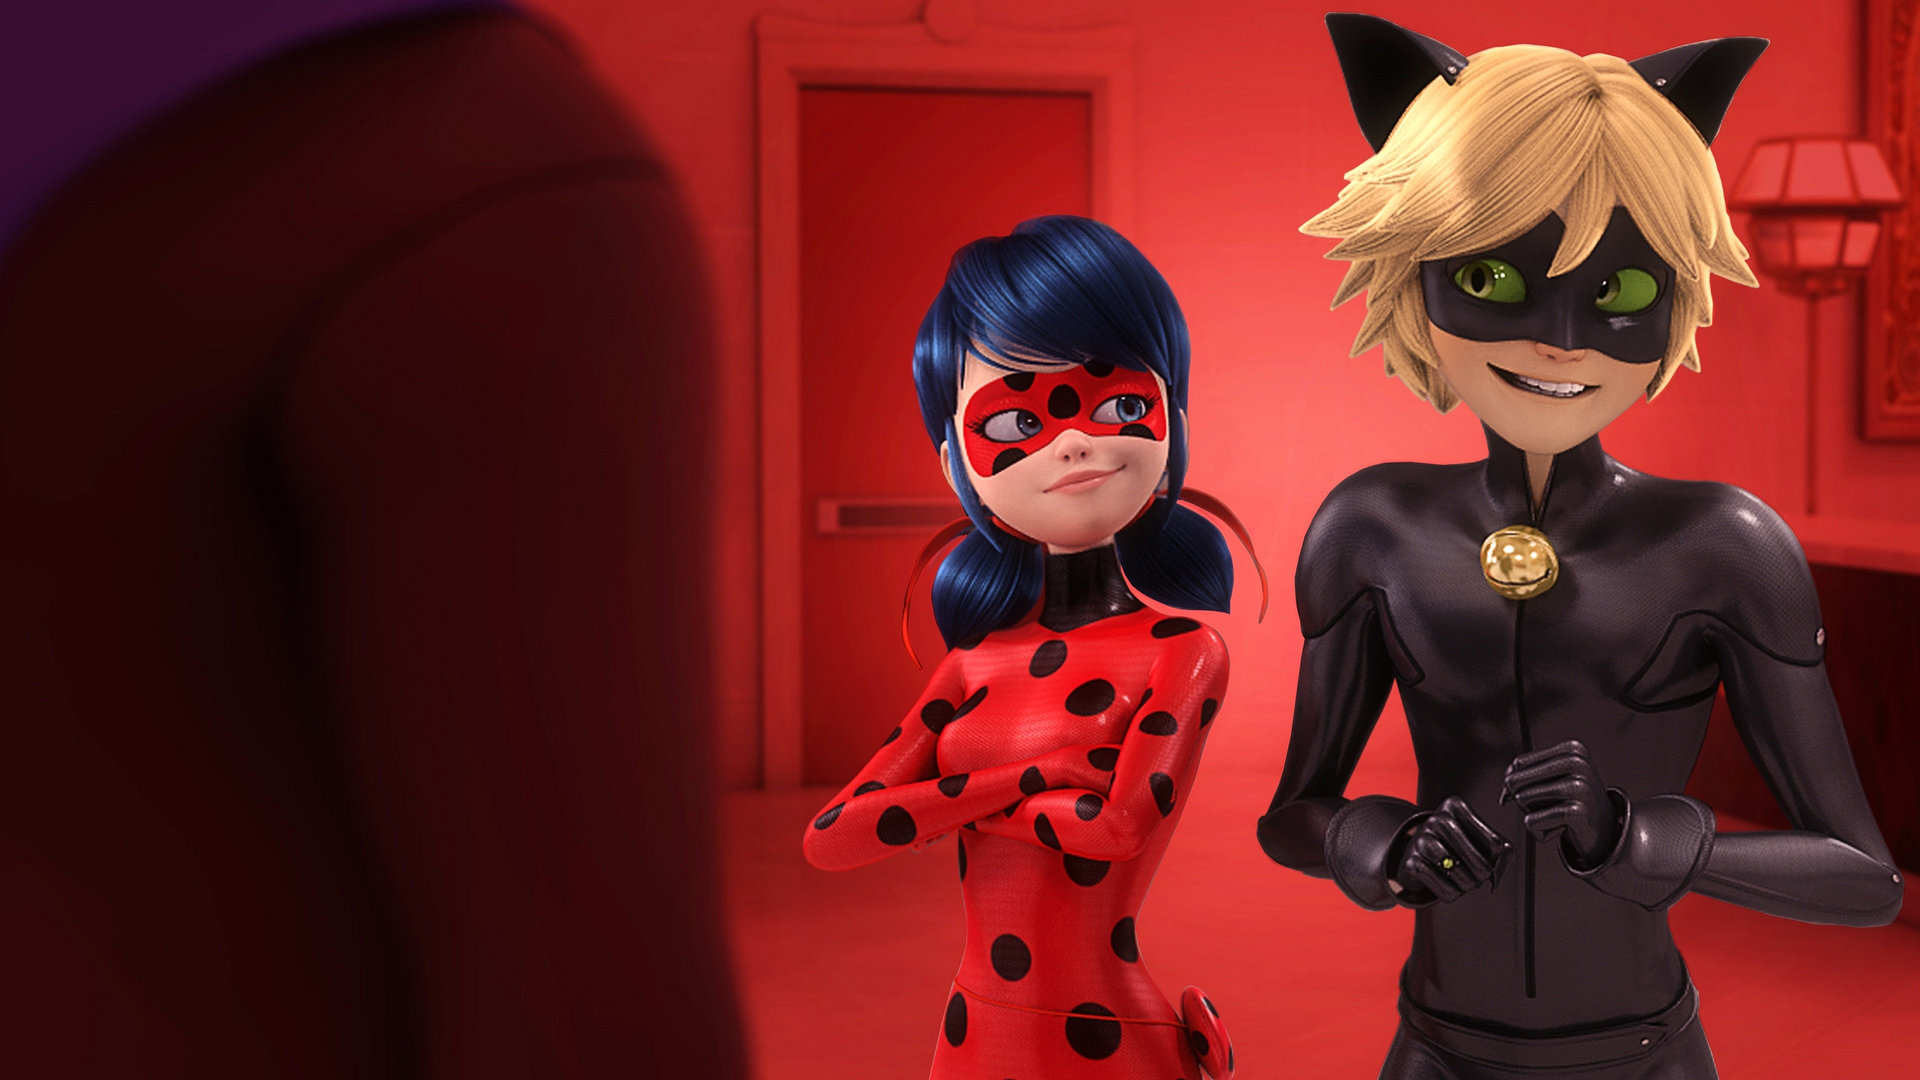 Miraculous: Ladybug ja Cat Noir seikkailut